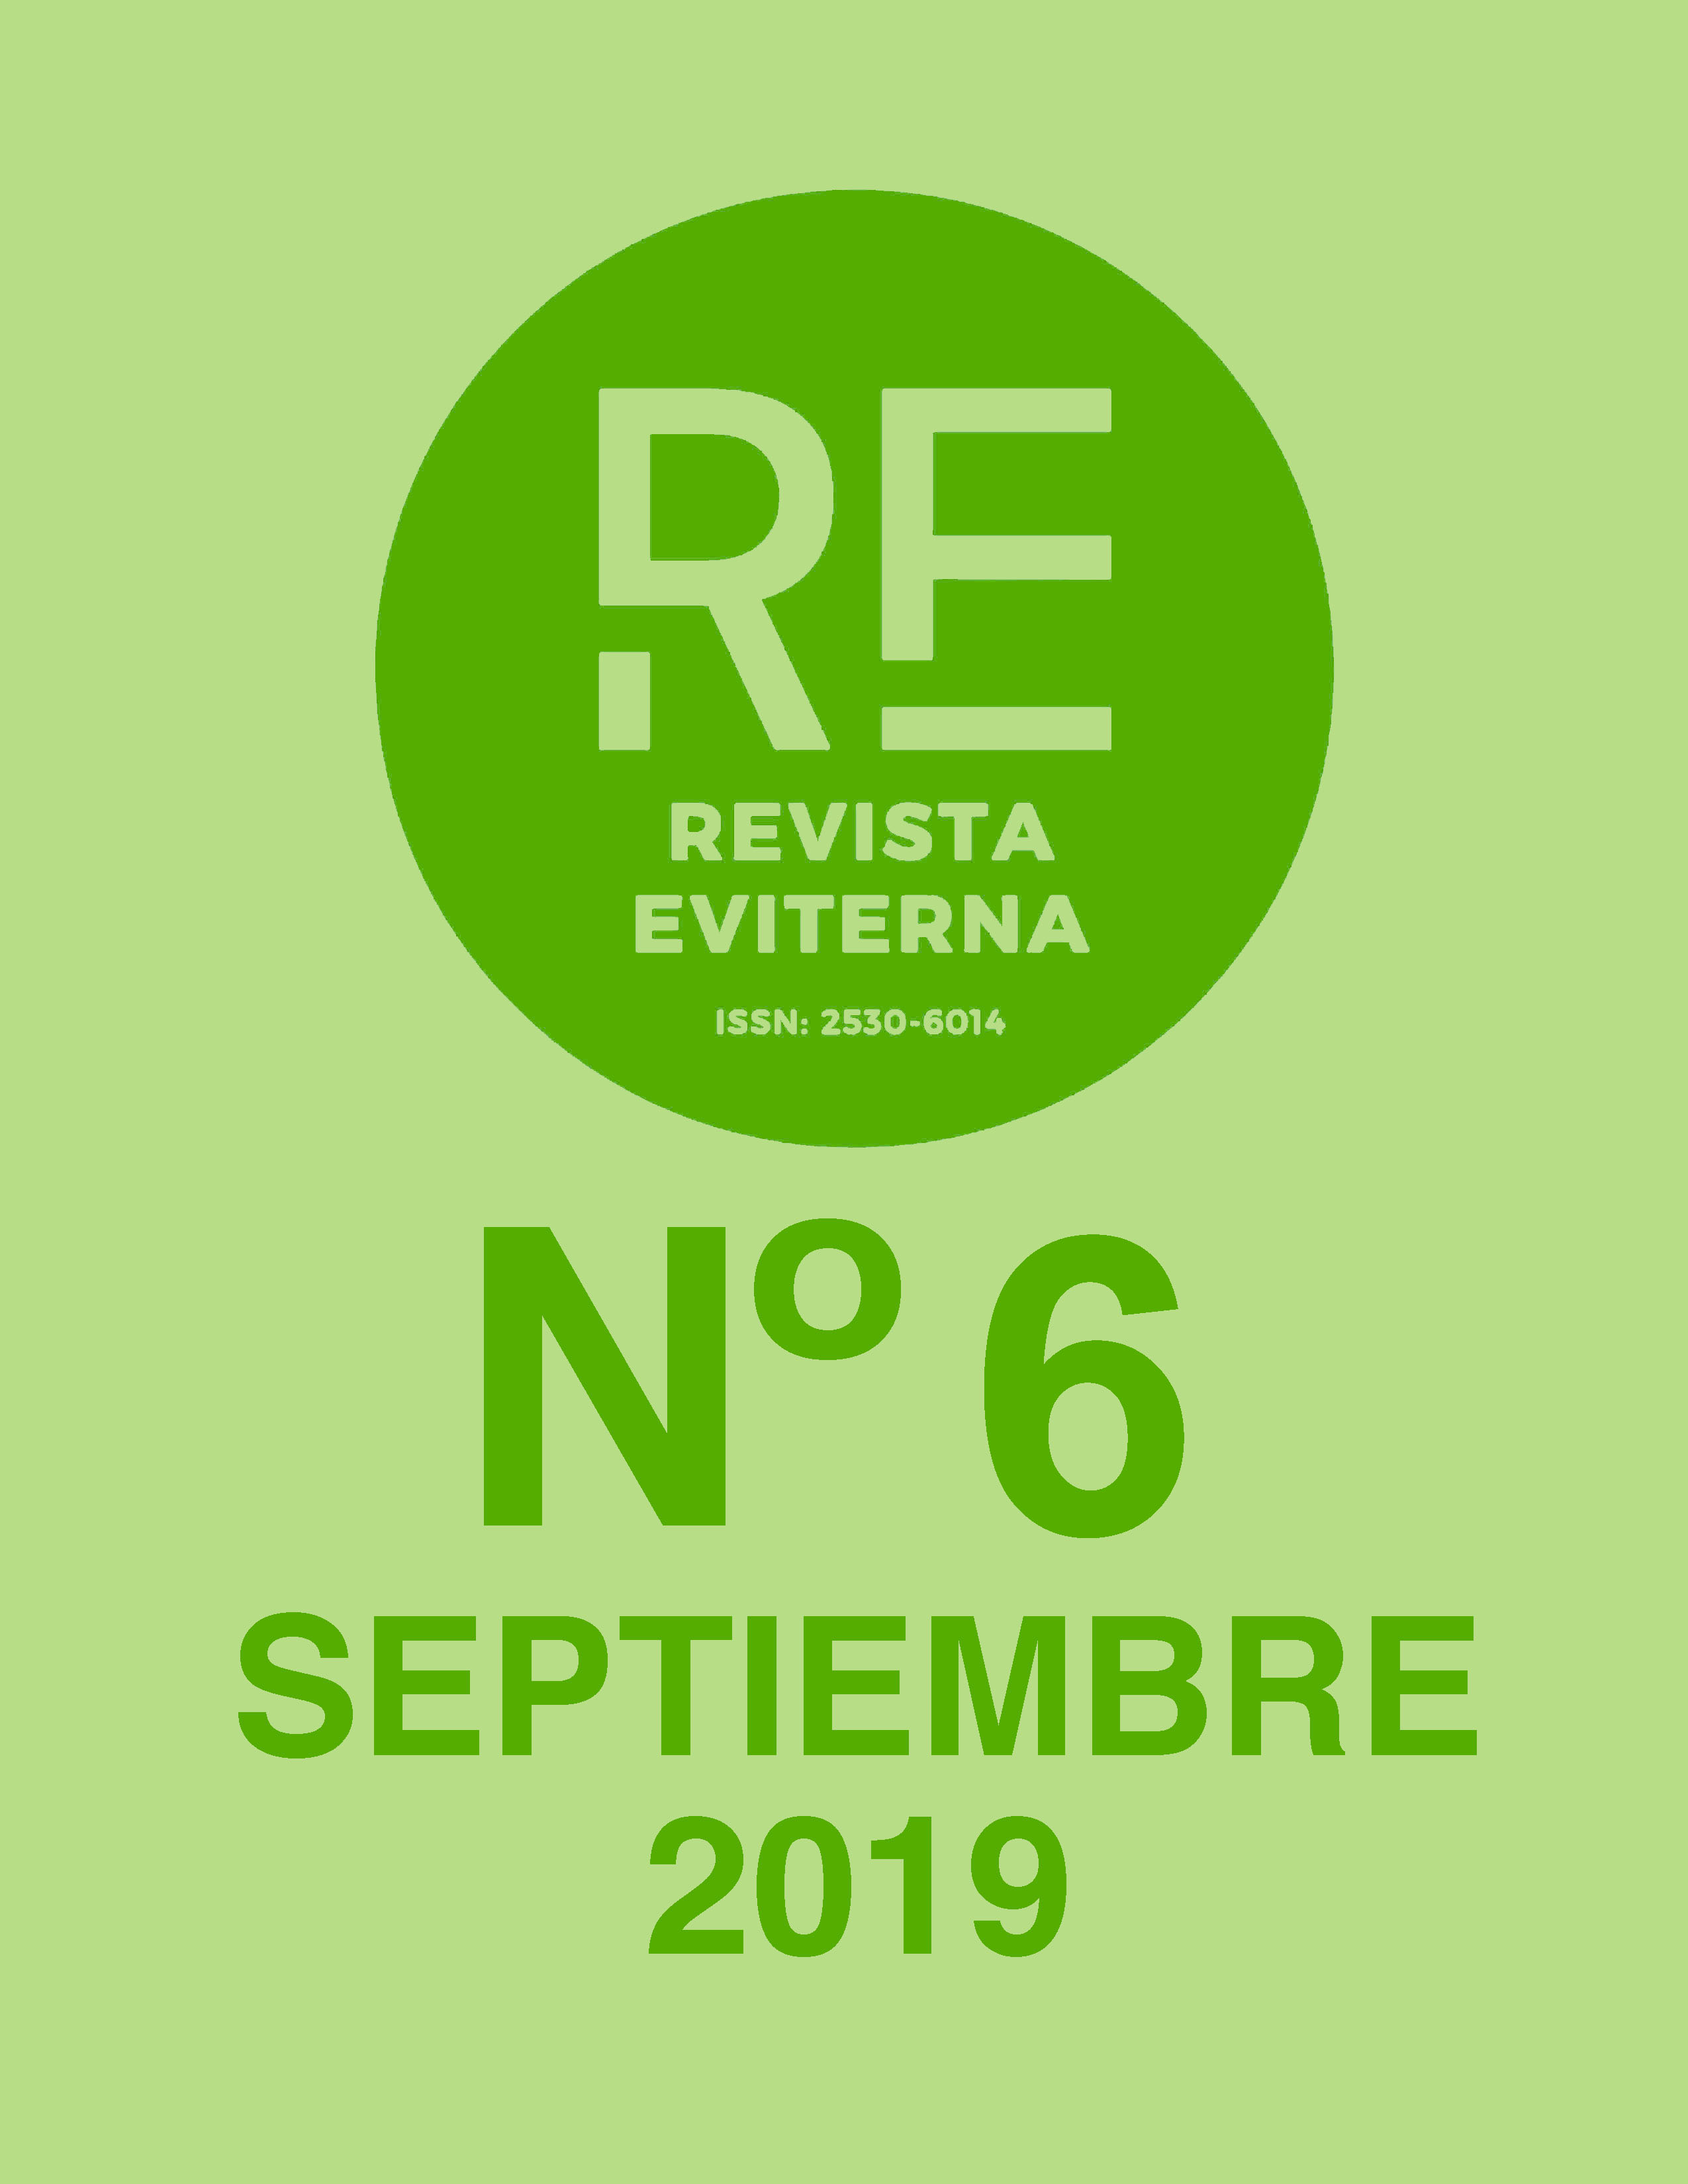 					View No. 6 (2019): Revista Eviterna Nº 6, septiembre 2019
				